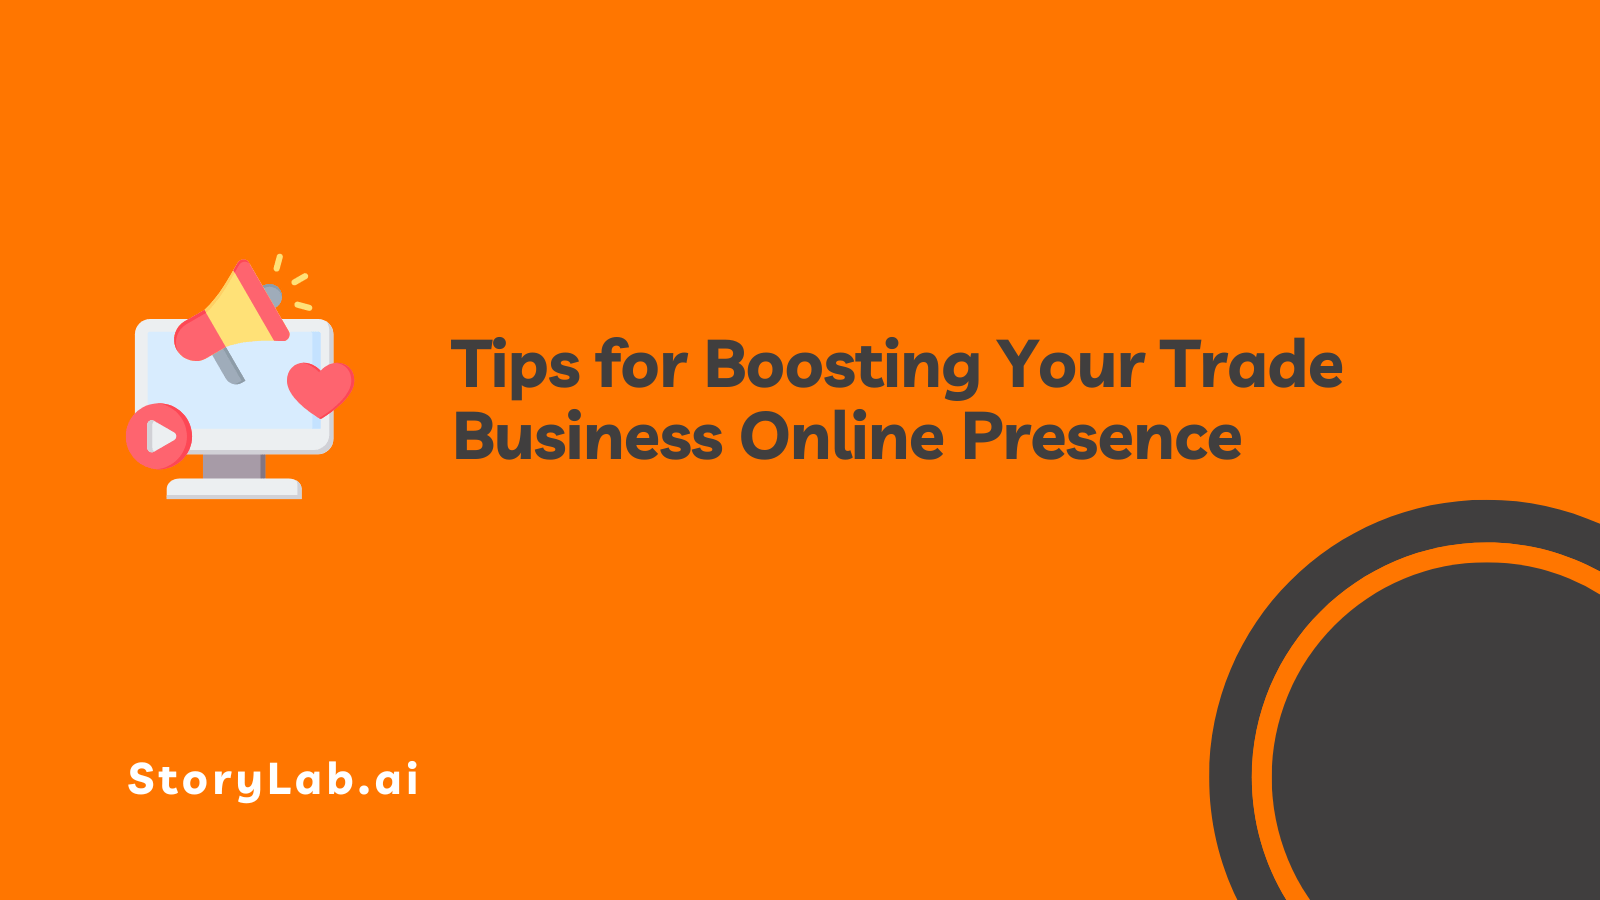 Suggerimenti per potenziare la presenza online della tua attività commerciale